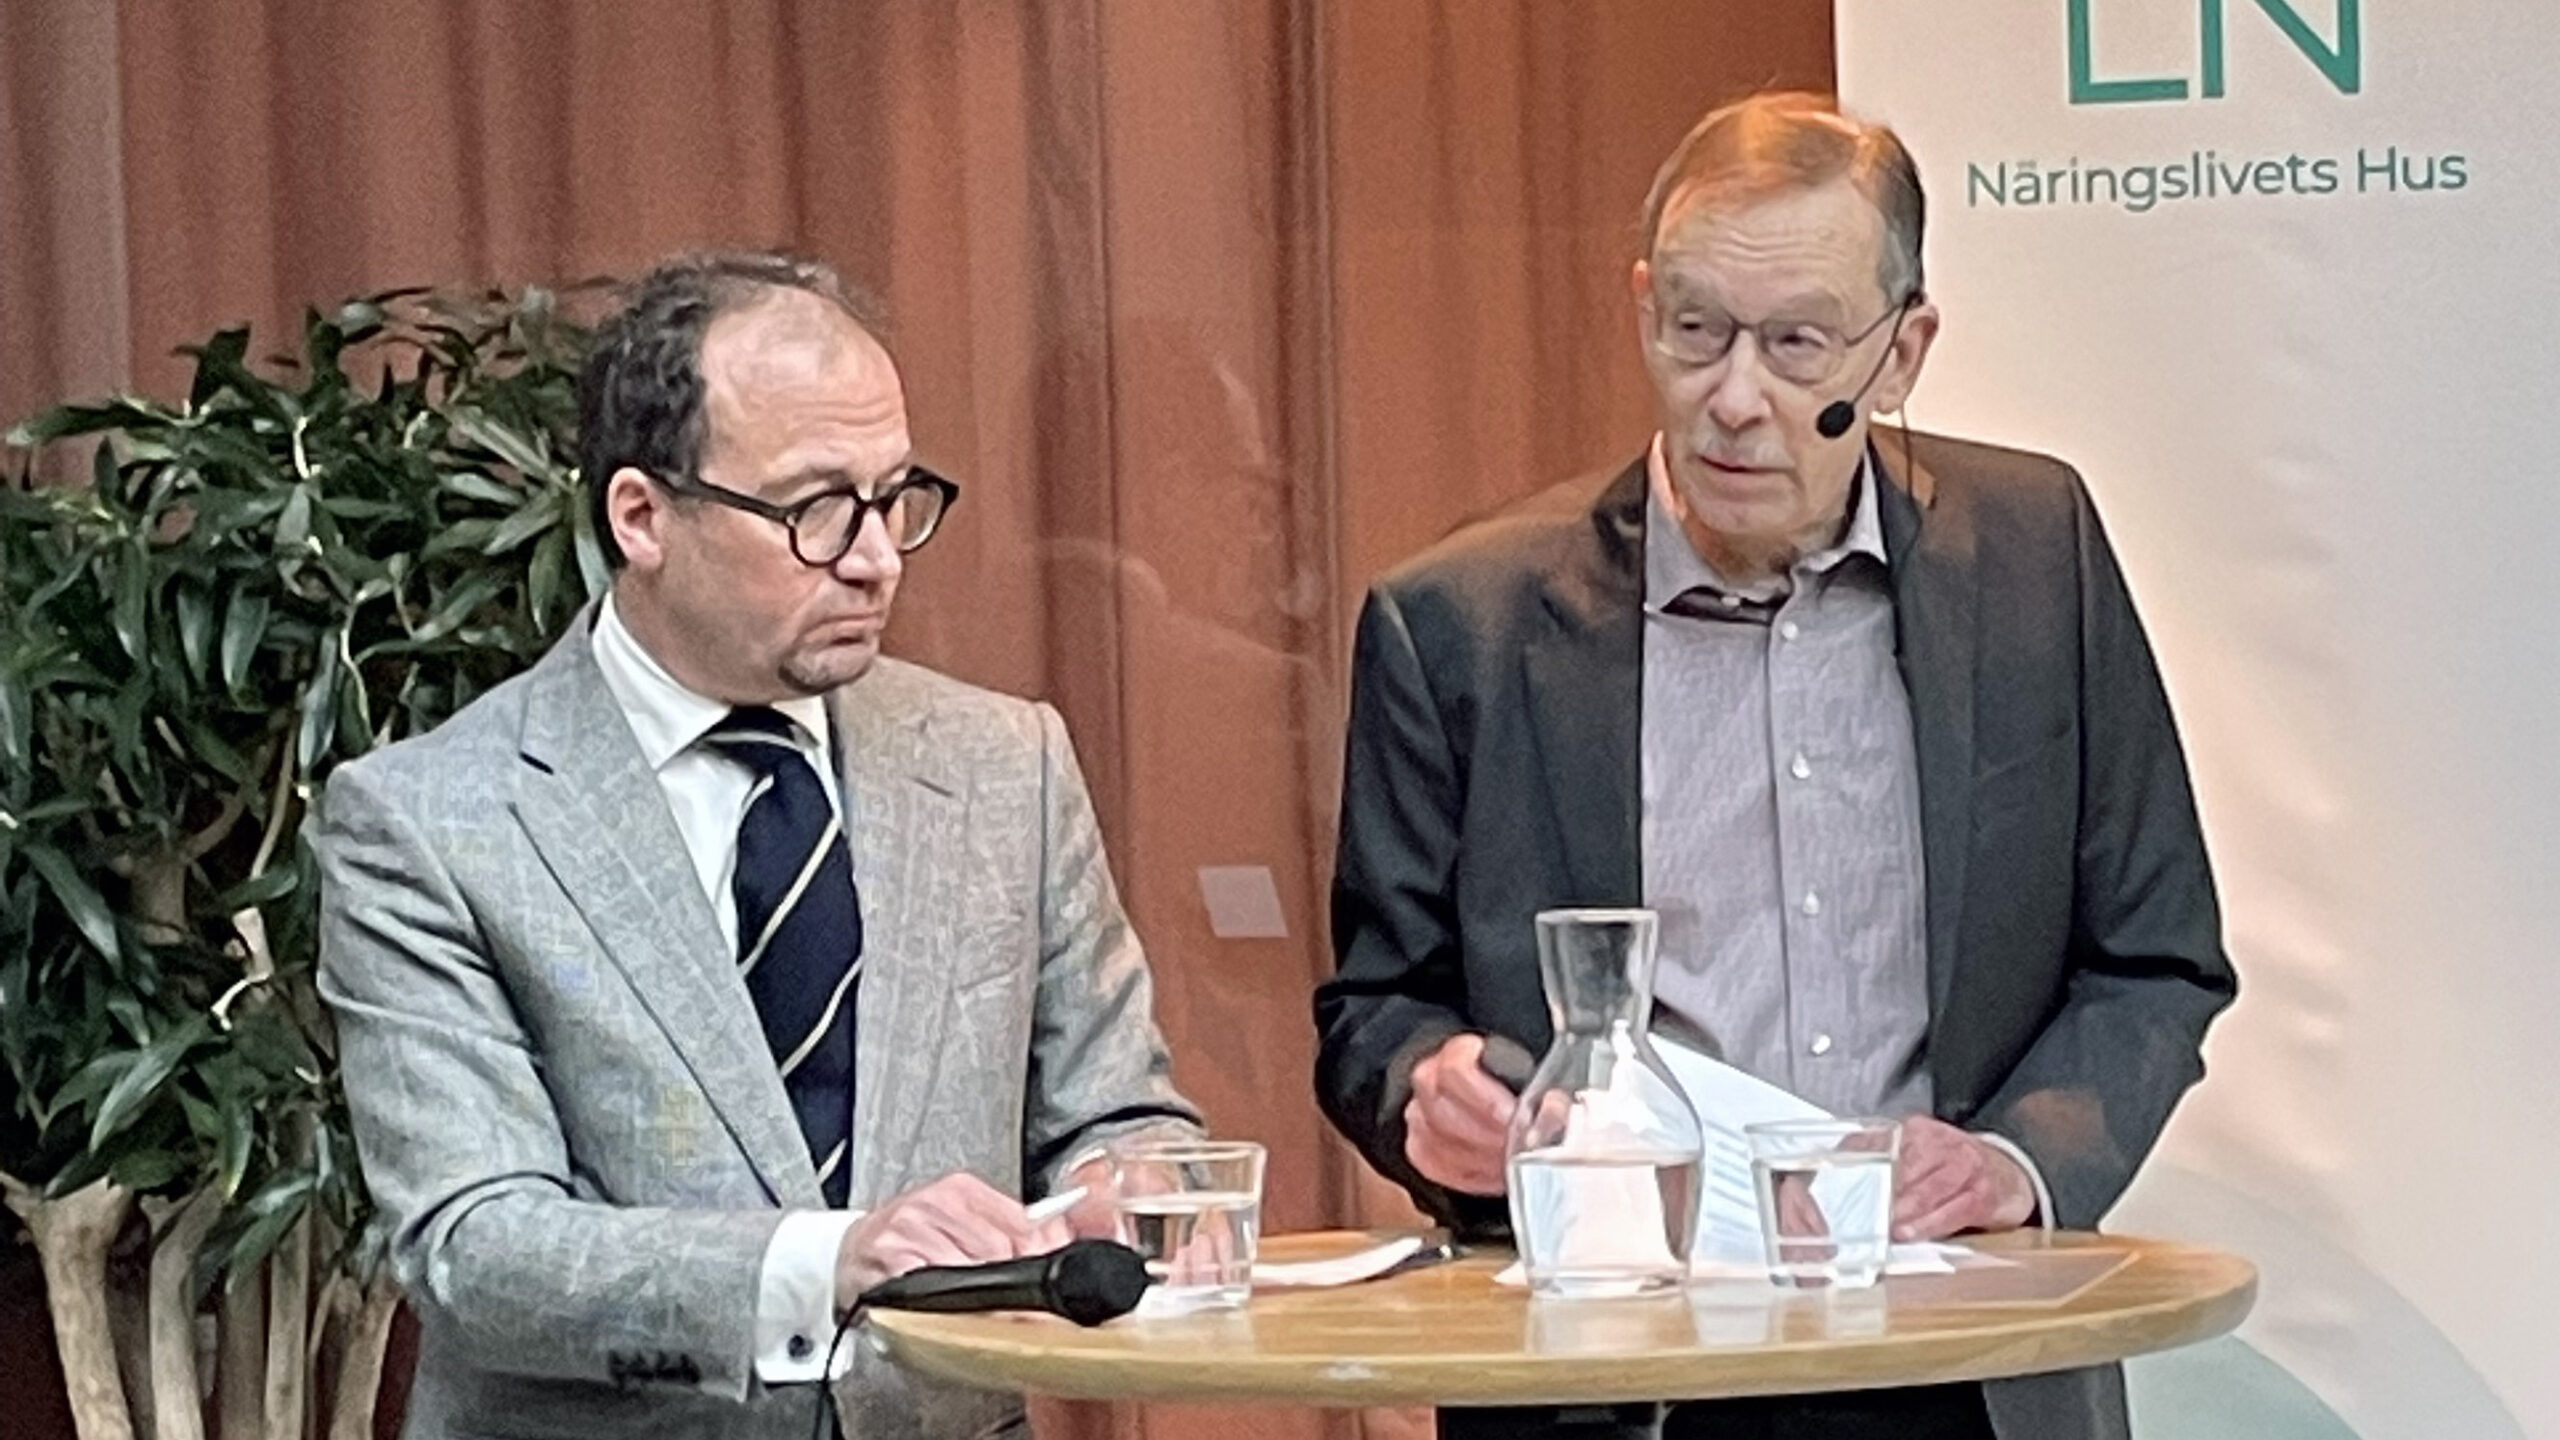 Robert Gidehag och Lars Calmfors på Husfrukost i Näringslivets Hus